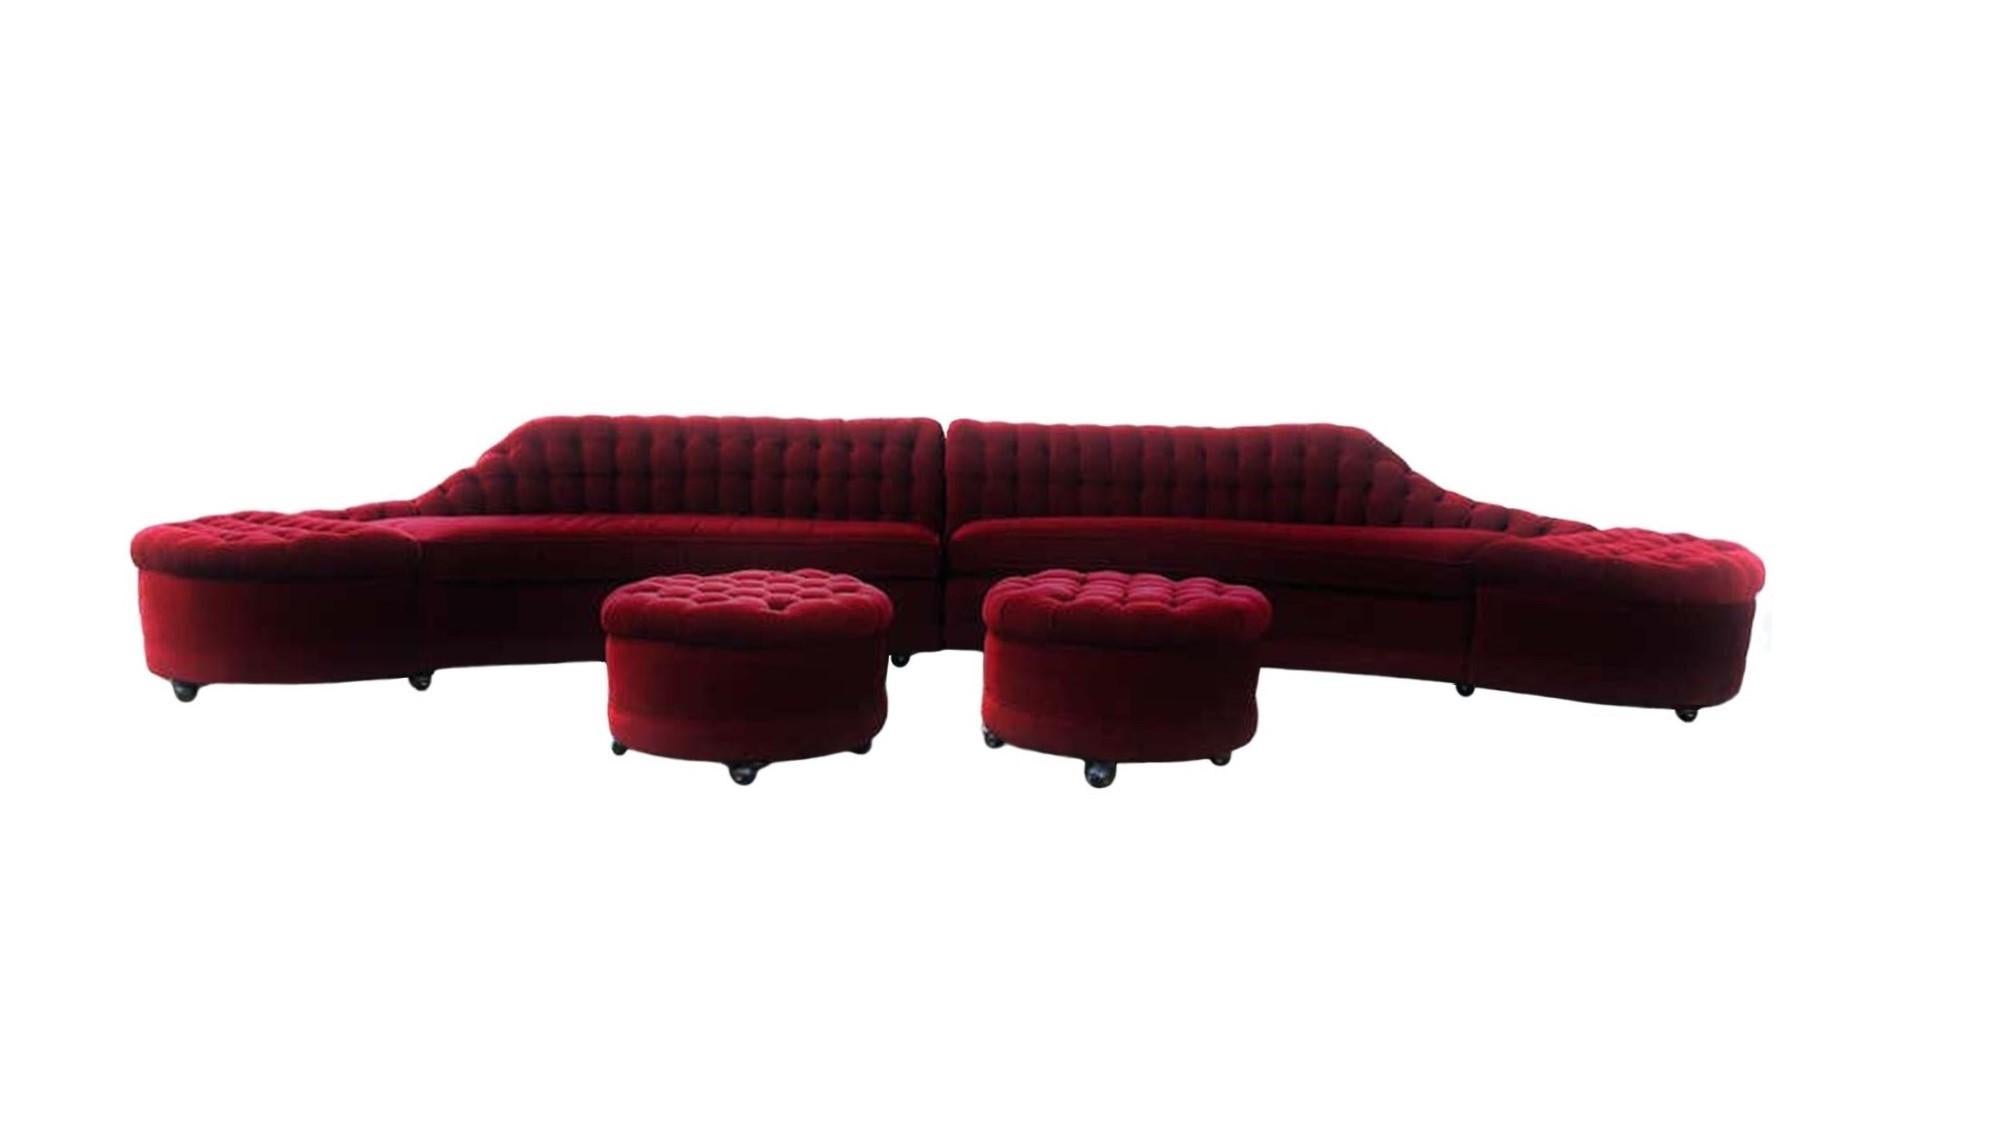 Vintage Hollywood Regency ein extra langes zweiteiliges Sofa mit einer tiefen getufteten Rückenlehne. Das Sofa ist in der Mitte geteilt, jede Seite hat ein einzelnes Sitzkissen mit abgerundeter Außenkante auf einer gepolsterten Basis, die